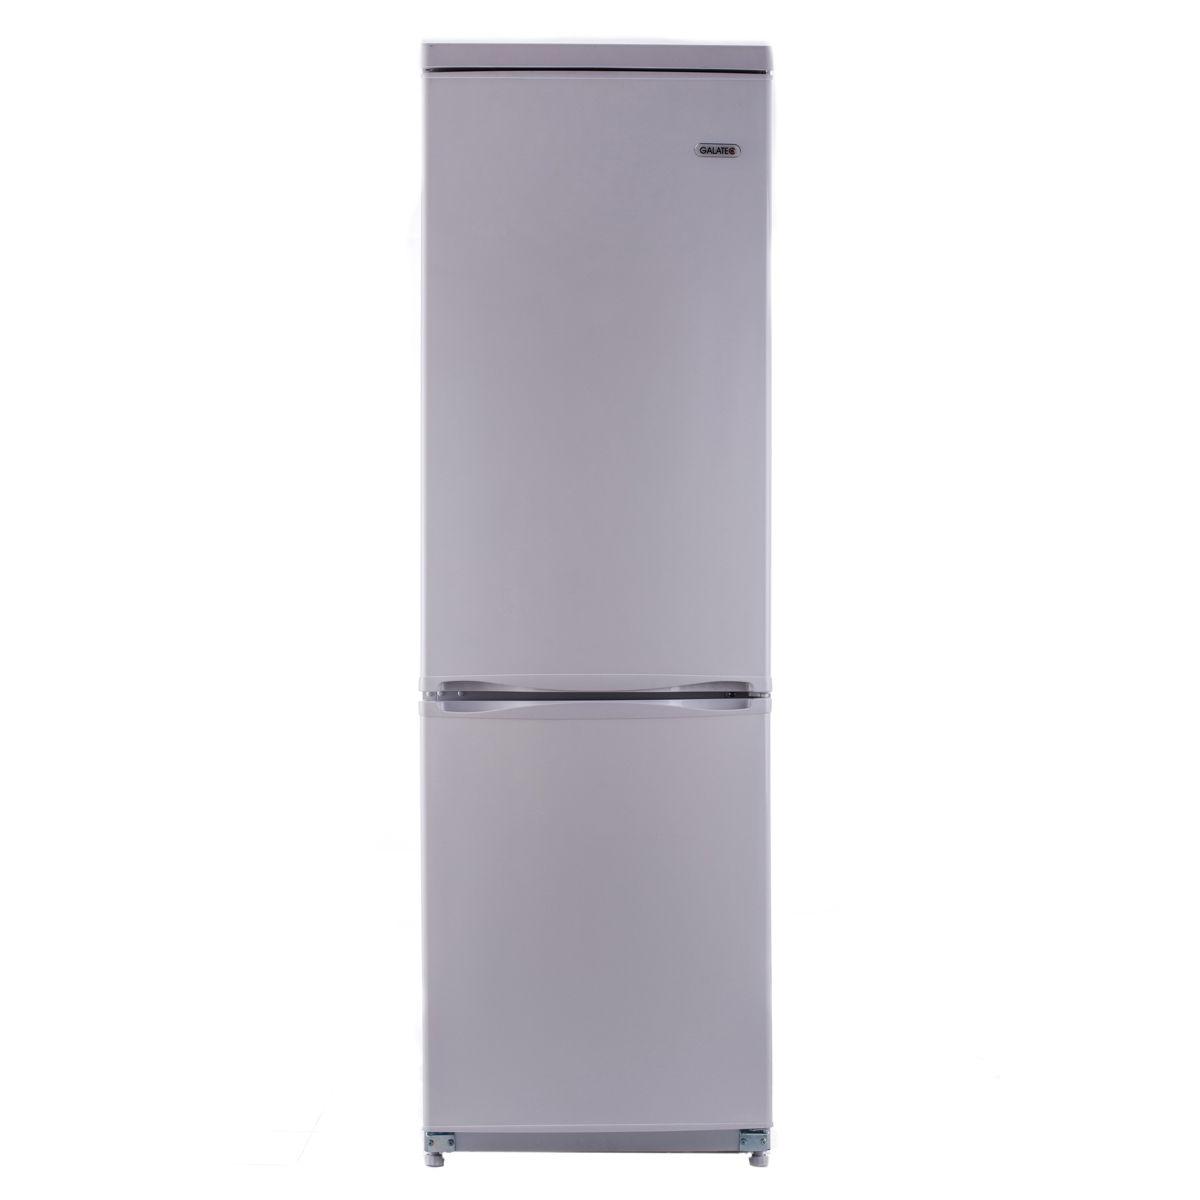 Холодильники индезит отзывы специалистов и покупателей. Холодильник Индезит DS 4180.